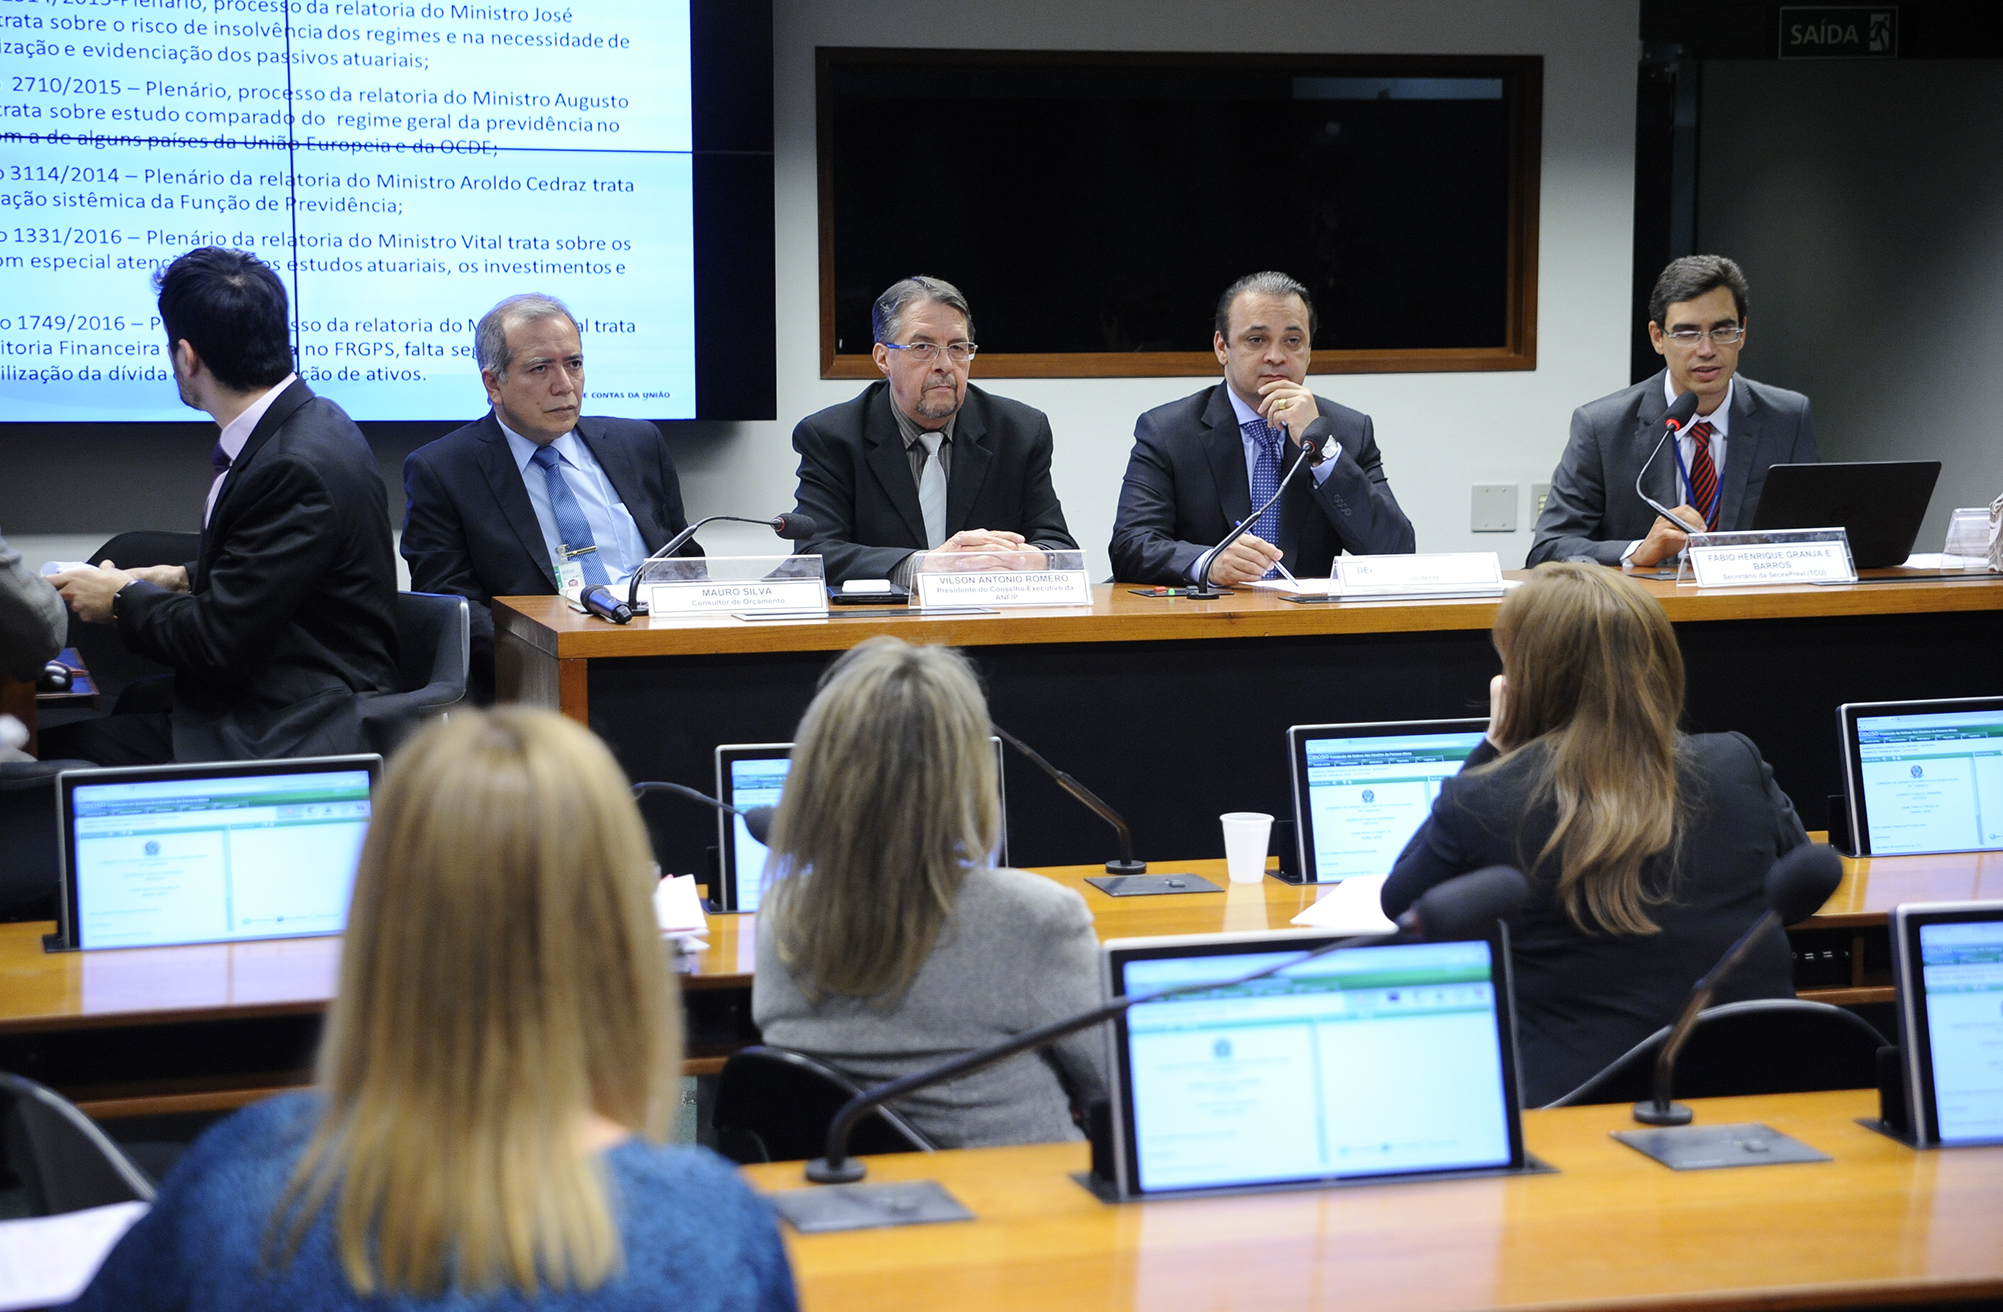 Debatedores divergem sobre diagnóstico e soluções para a Reforma da Previdência